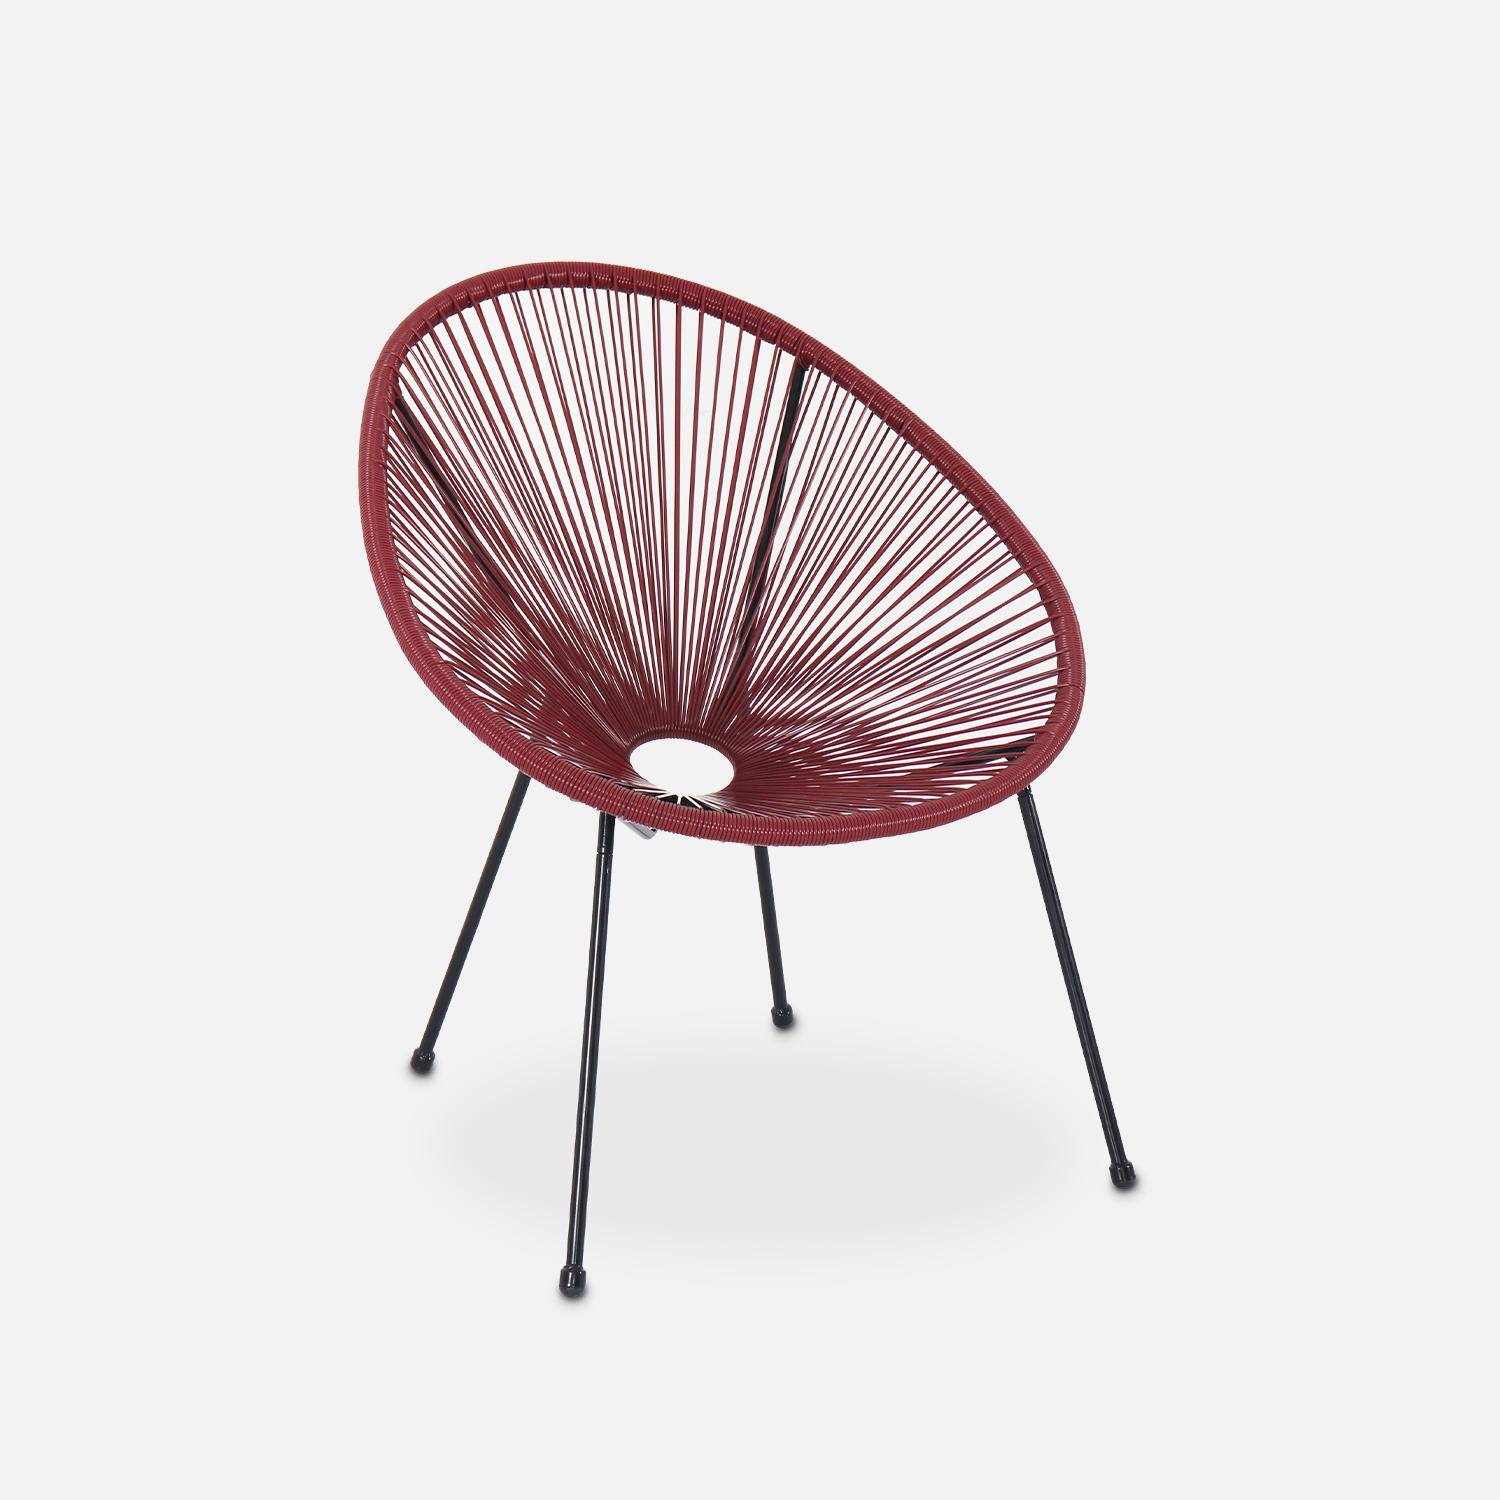 ACAPULCO stoel ei-vormig -Bordeaux- Stoel 4 poten retro design, plastic koorden, binnen/buiten Photo2